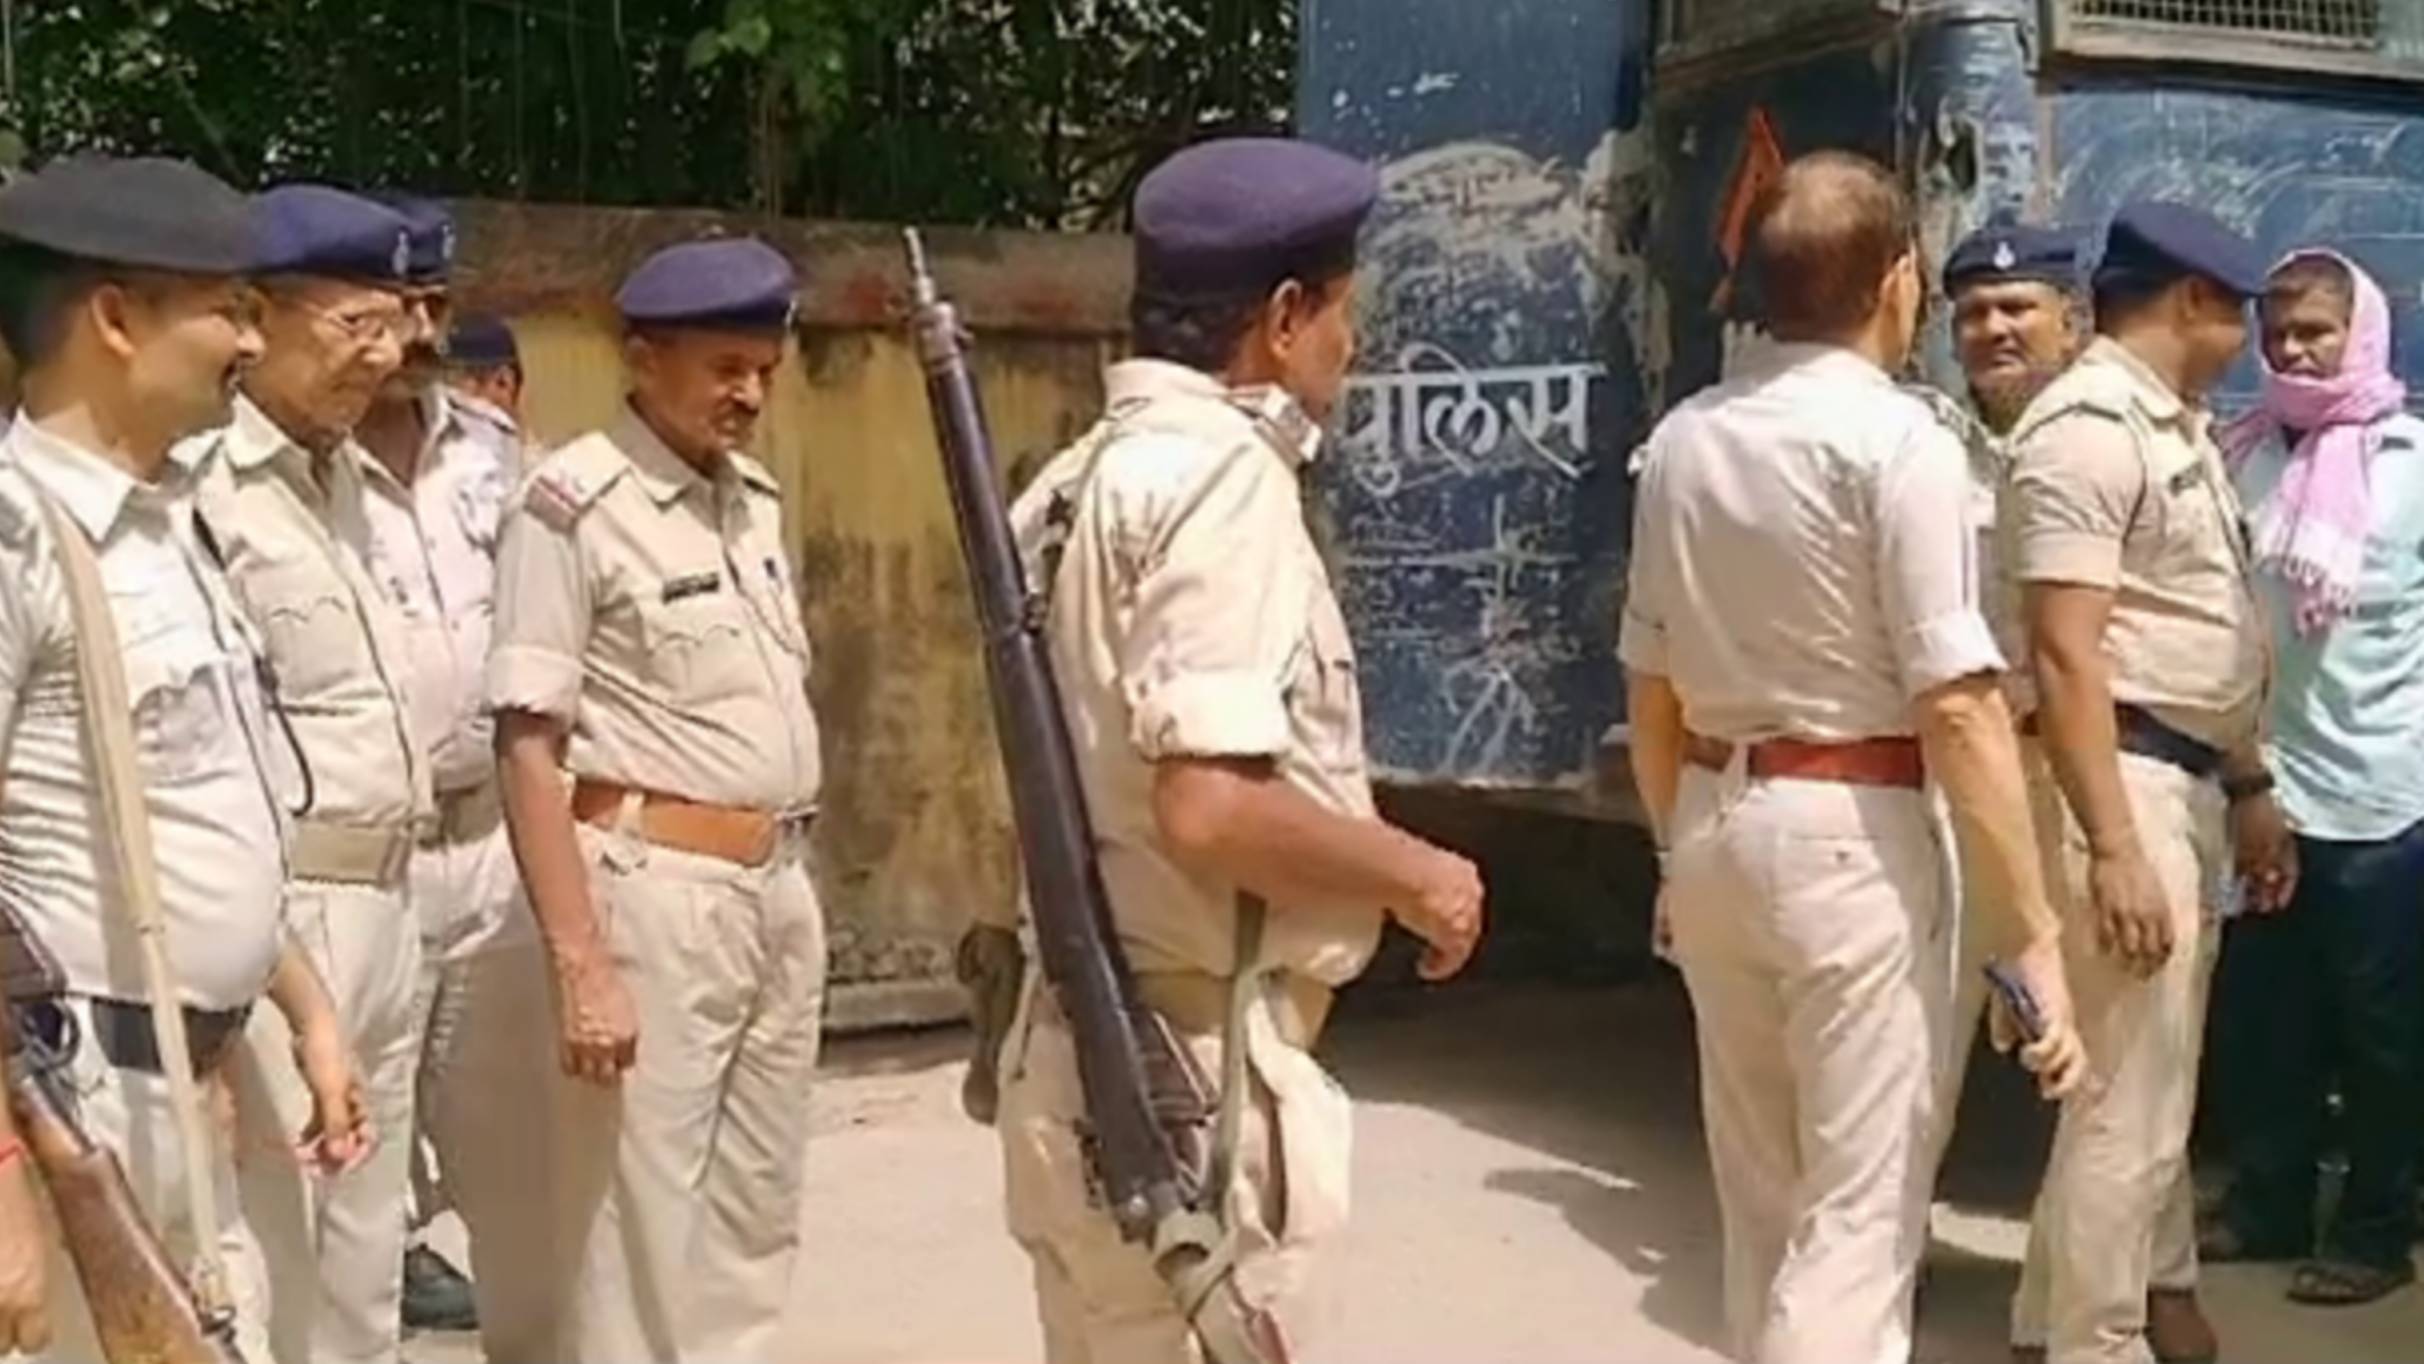 सिपाही के आंख में झंडू बाम लगा कर फरार हुए 3 कैदी, पटना पुलिस की लापरवाही  से मचा हड़कंप - समस्तीपुर Town